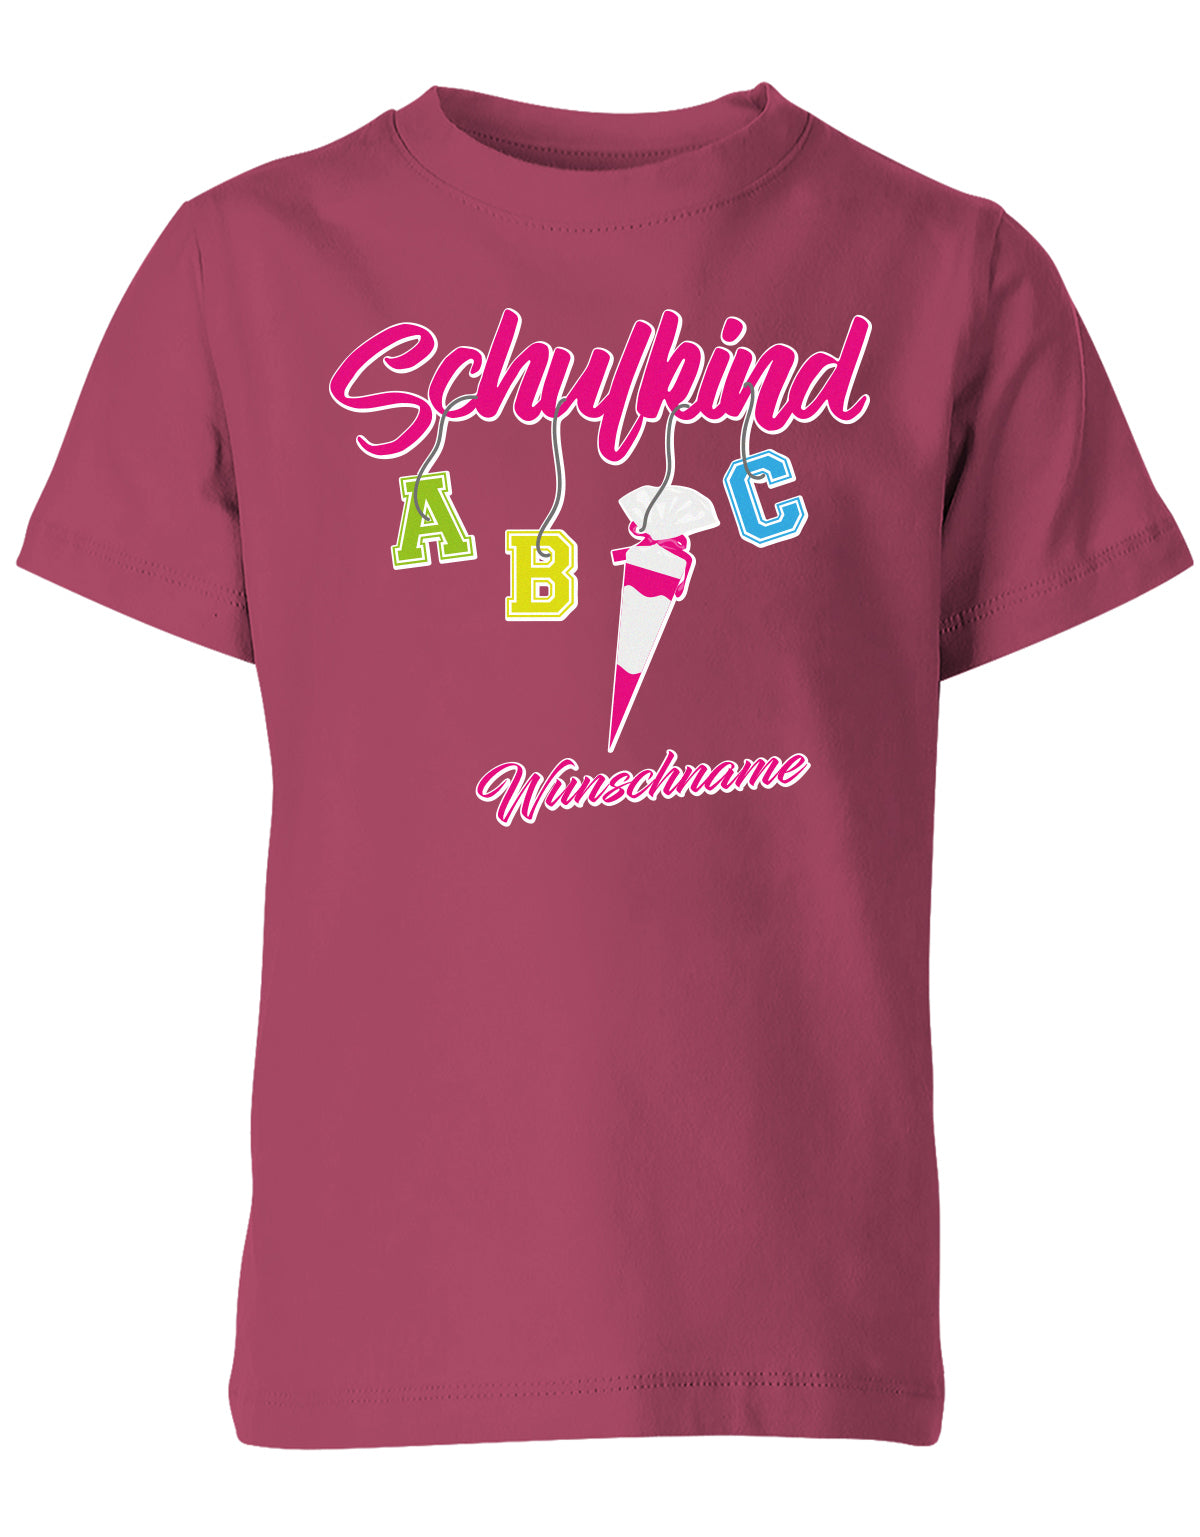 Schulkind ABC Schultüte Wunschname Blau oder Pink Einschulung Kinder T-Shirt Sorbet pink